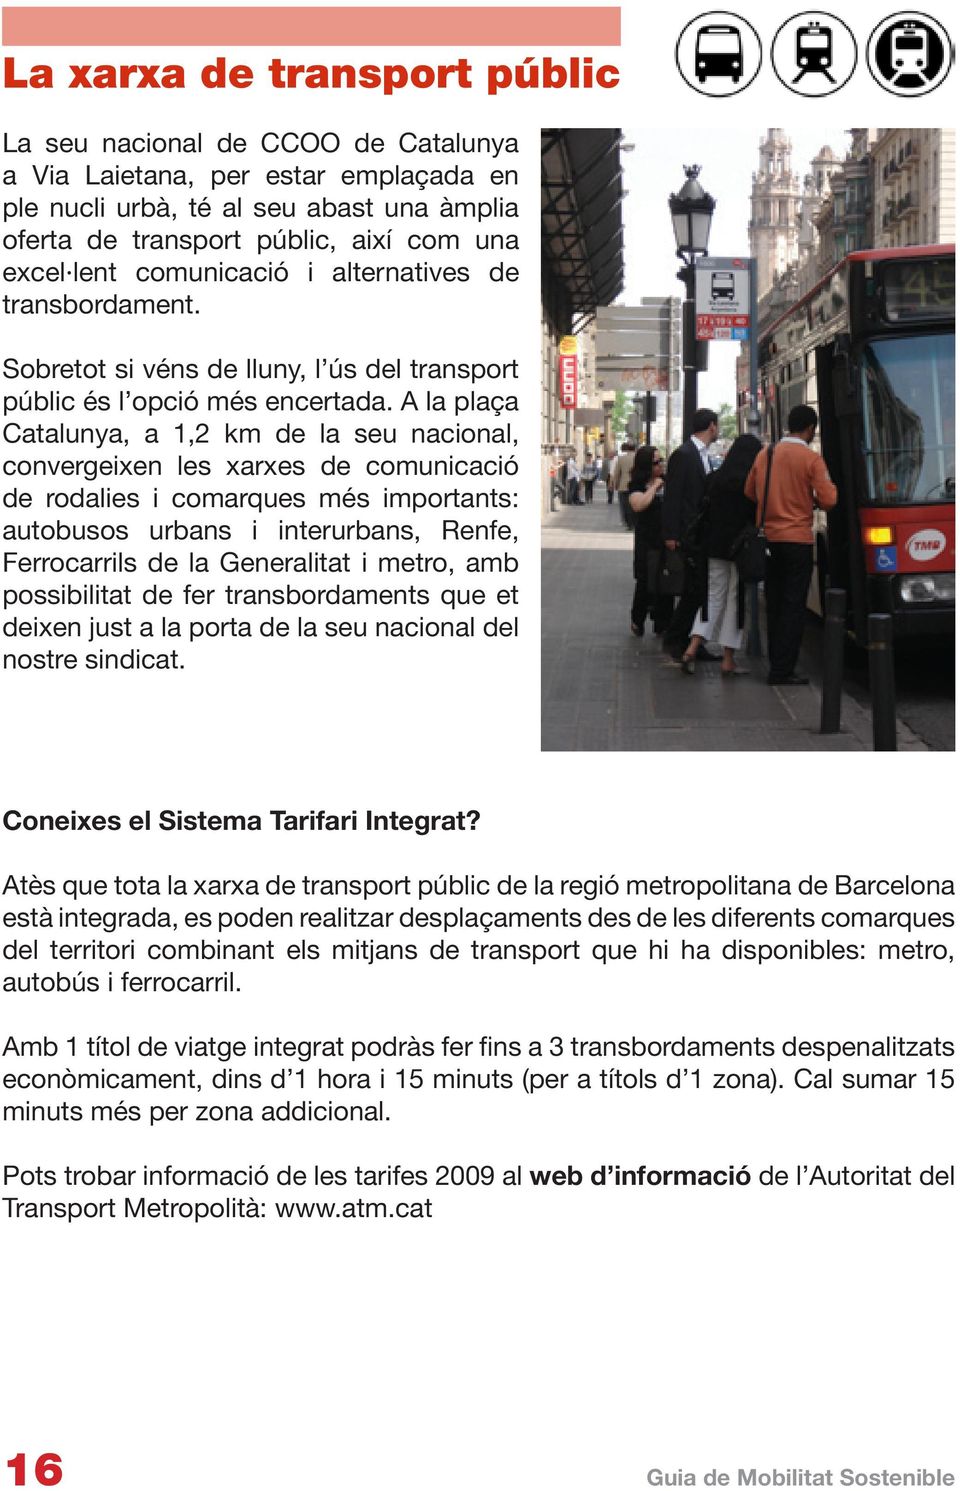 A la plaça Catalunya, a 1,2 km de la seu nacional, convergeixen les xarxes de comunicació de rodalies i comarques més importants: autobusos urbans i interurbans, Renfe, Ferrocarrils de la Generalitat